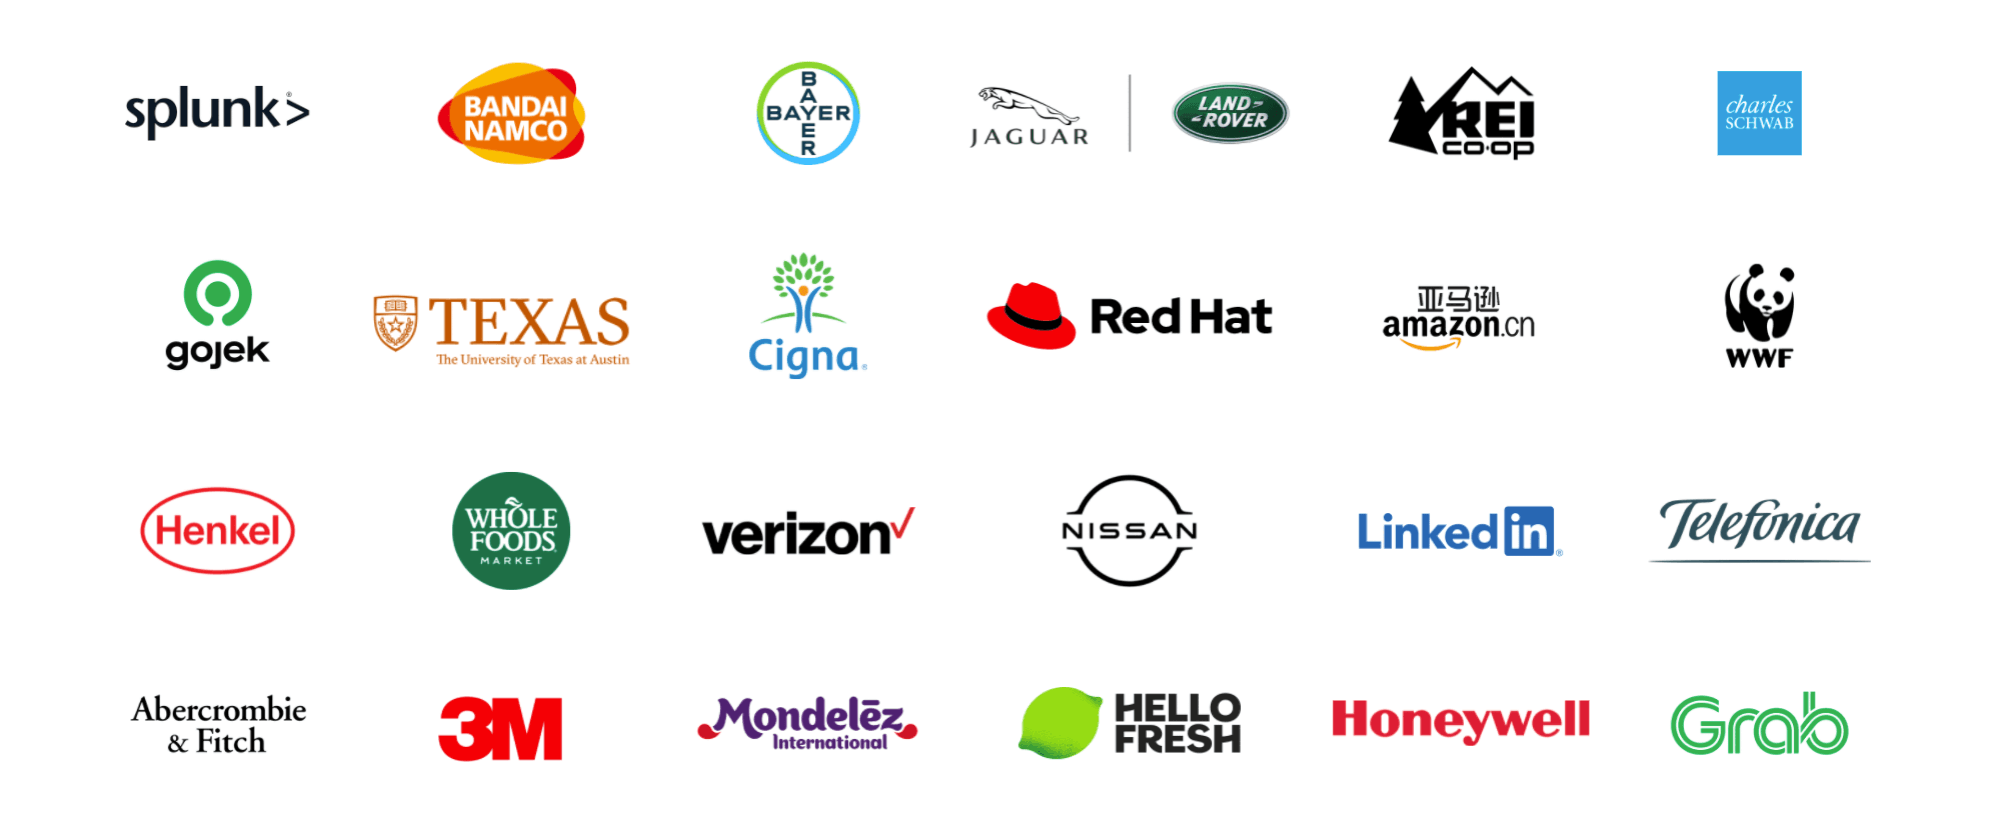 Logo's van Tableau-klanten uit diverse sectoren overal ter wereld, waaronder Jaguar LandRover, Charles Schwab, University of Texas in Austin, Red Hat, Amazon.cn, Verizon, LinkedIn, Mondelēz International, Honeywell en Grab.